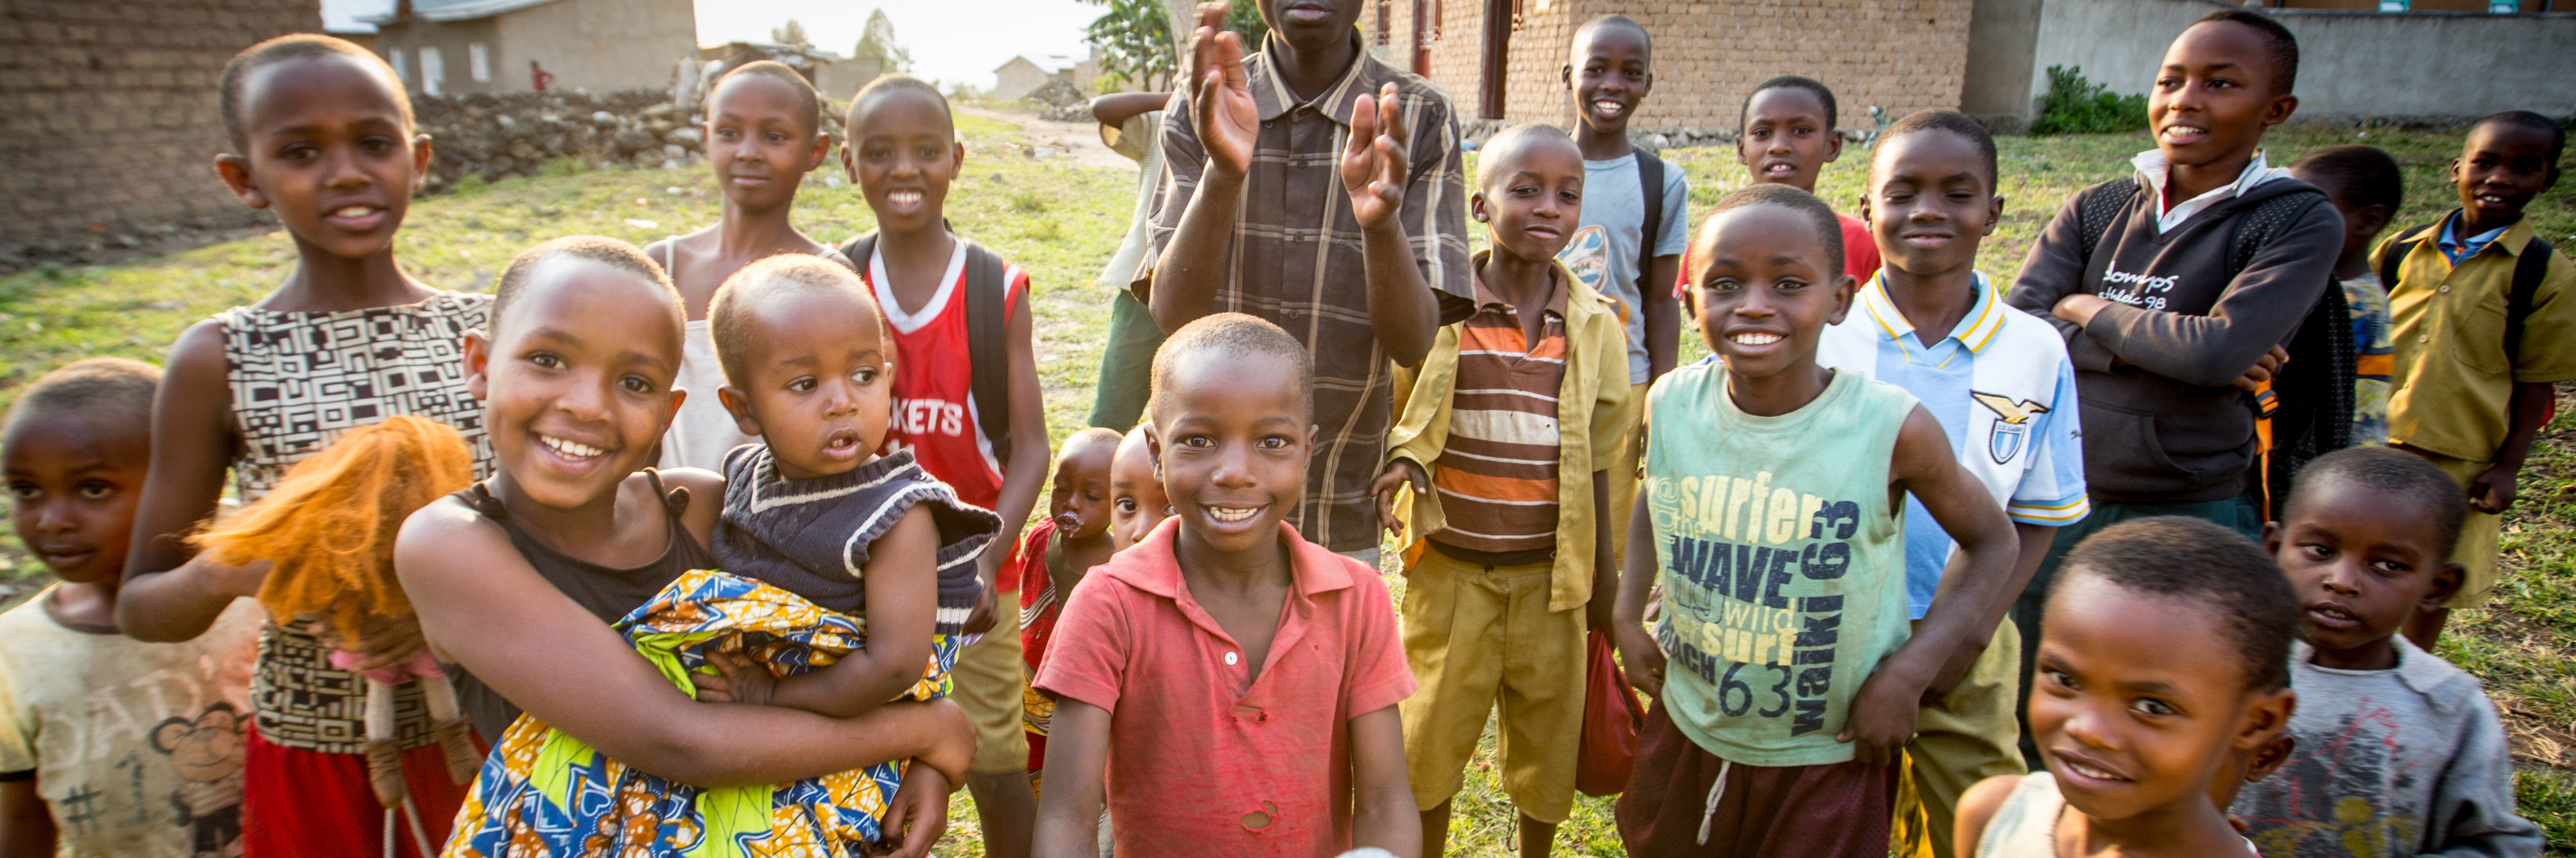 Colaboración con los niños de Ruanda desde ElPorvenirSolidario